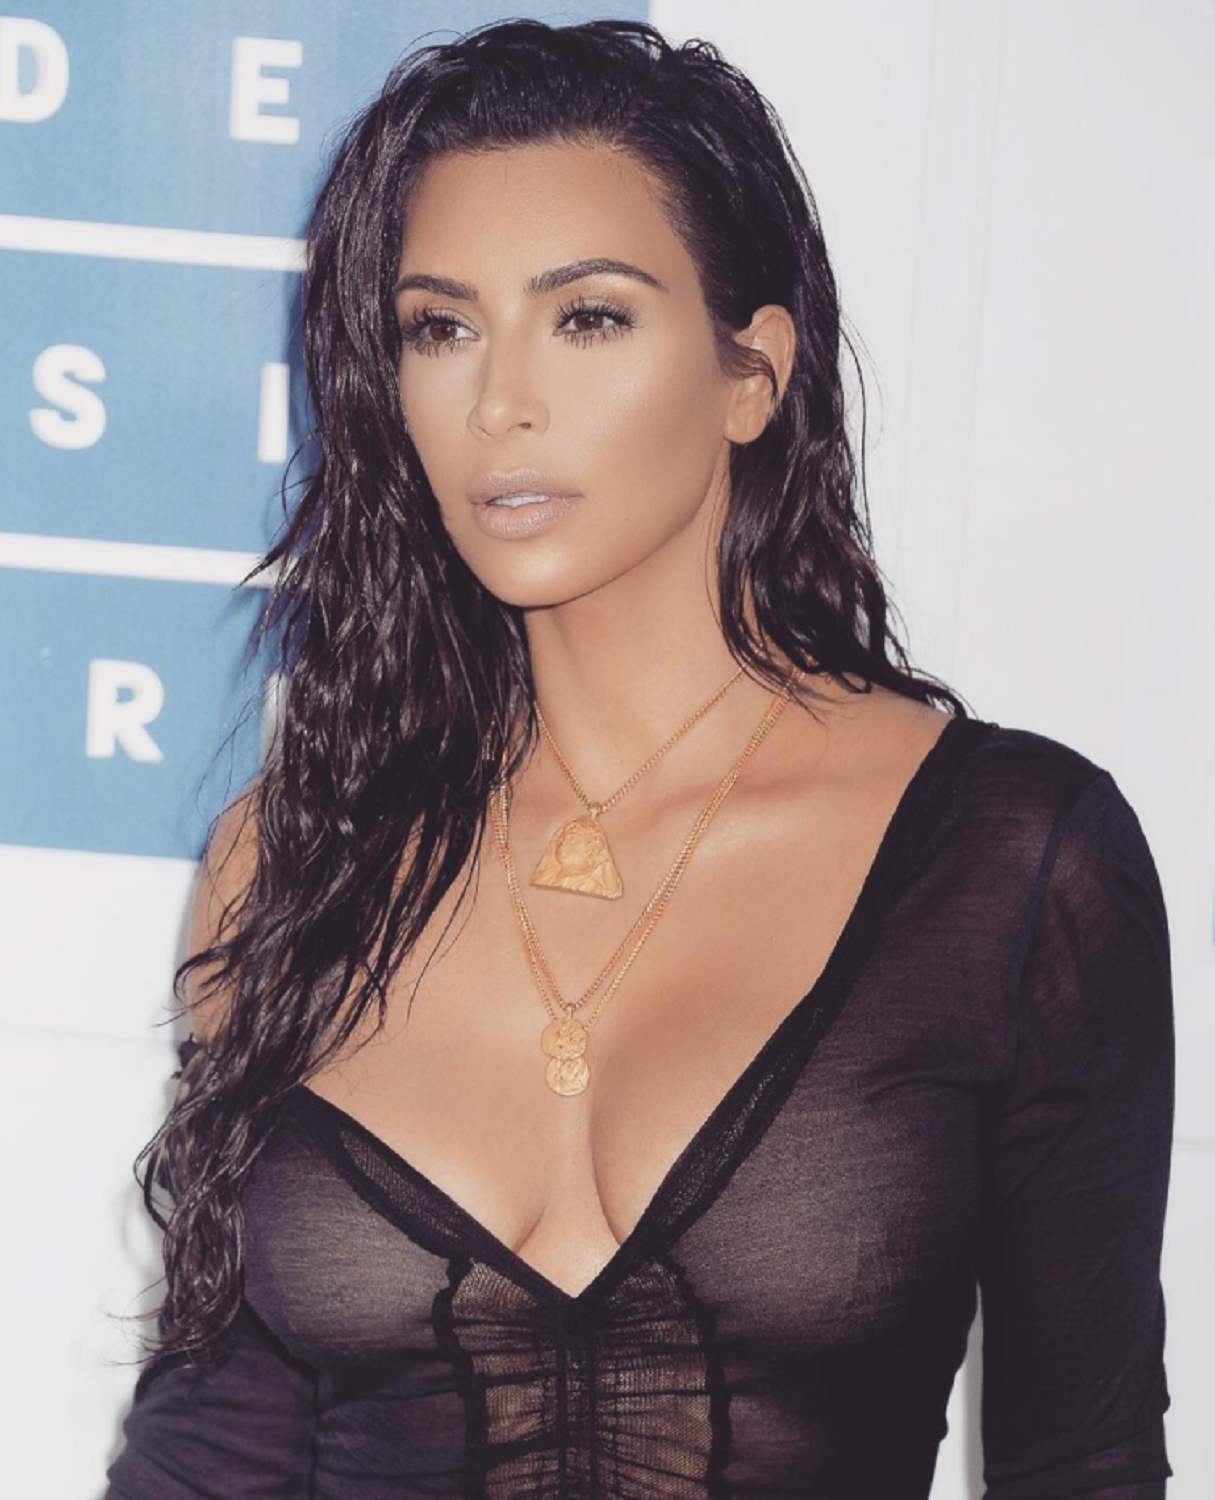 El polèmic vídeo de Kim Kardashian amb dues ratlles de sucre